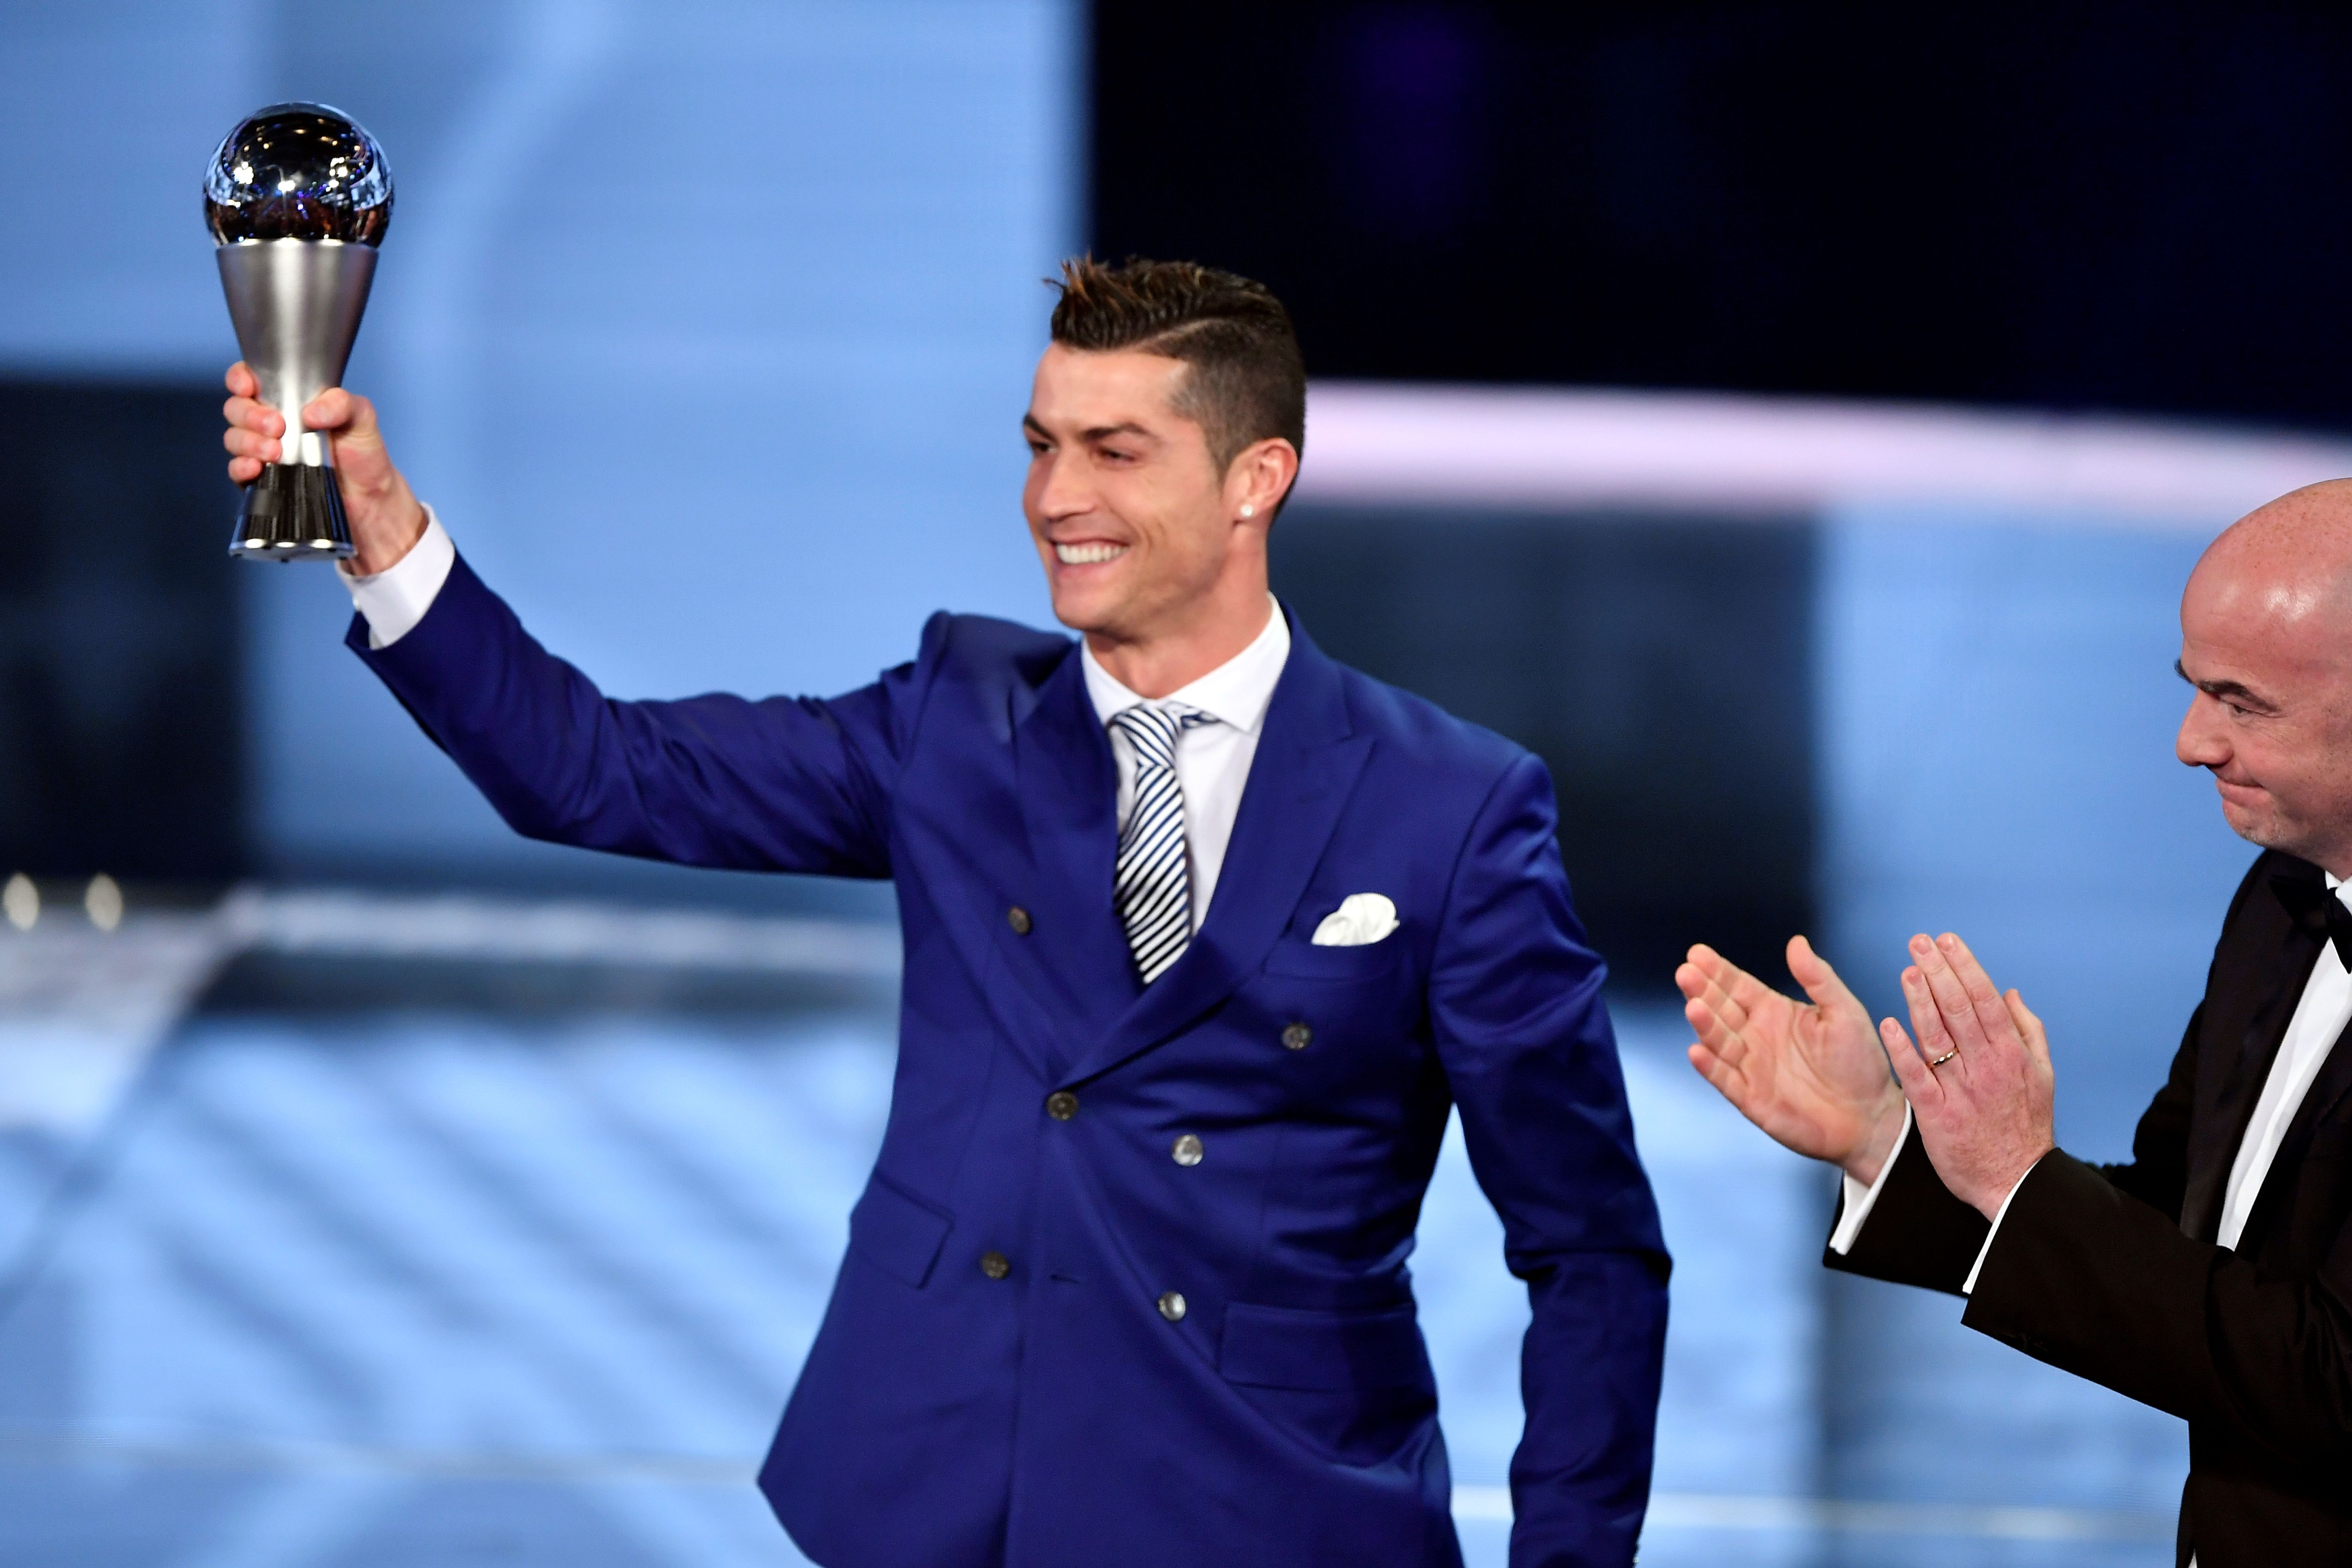 Cristiano Ronaldo muestra su trofeo como Mejor Jugador del Año de la FIFA. (Crédito: FABRICE COFFRINI/AFP/Getty Images)